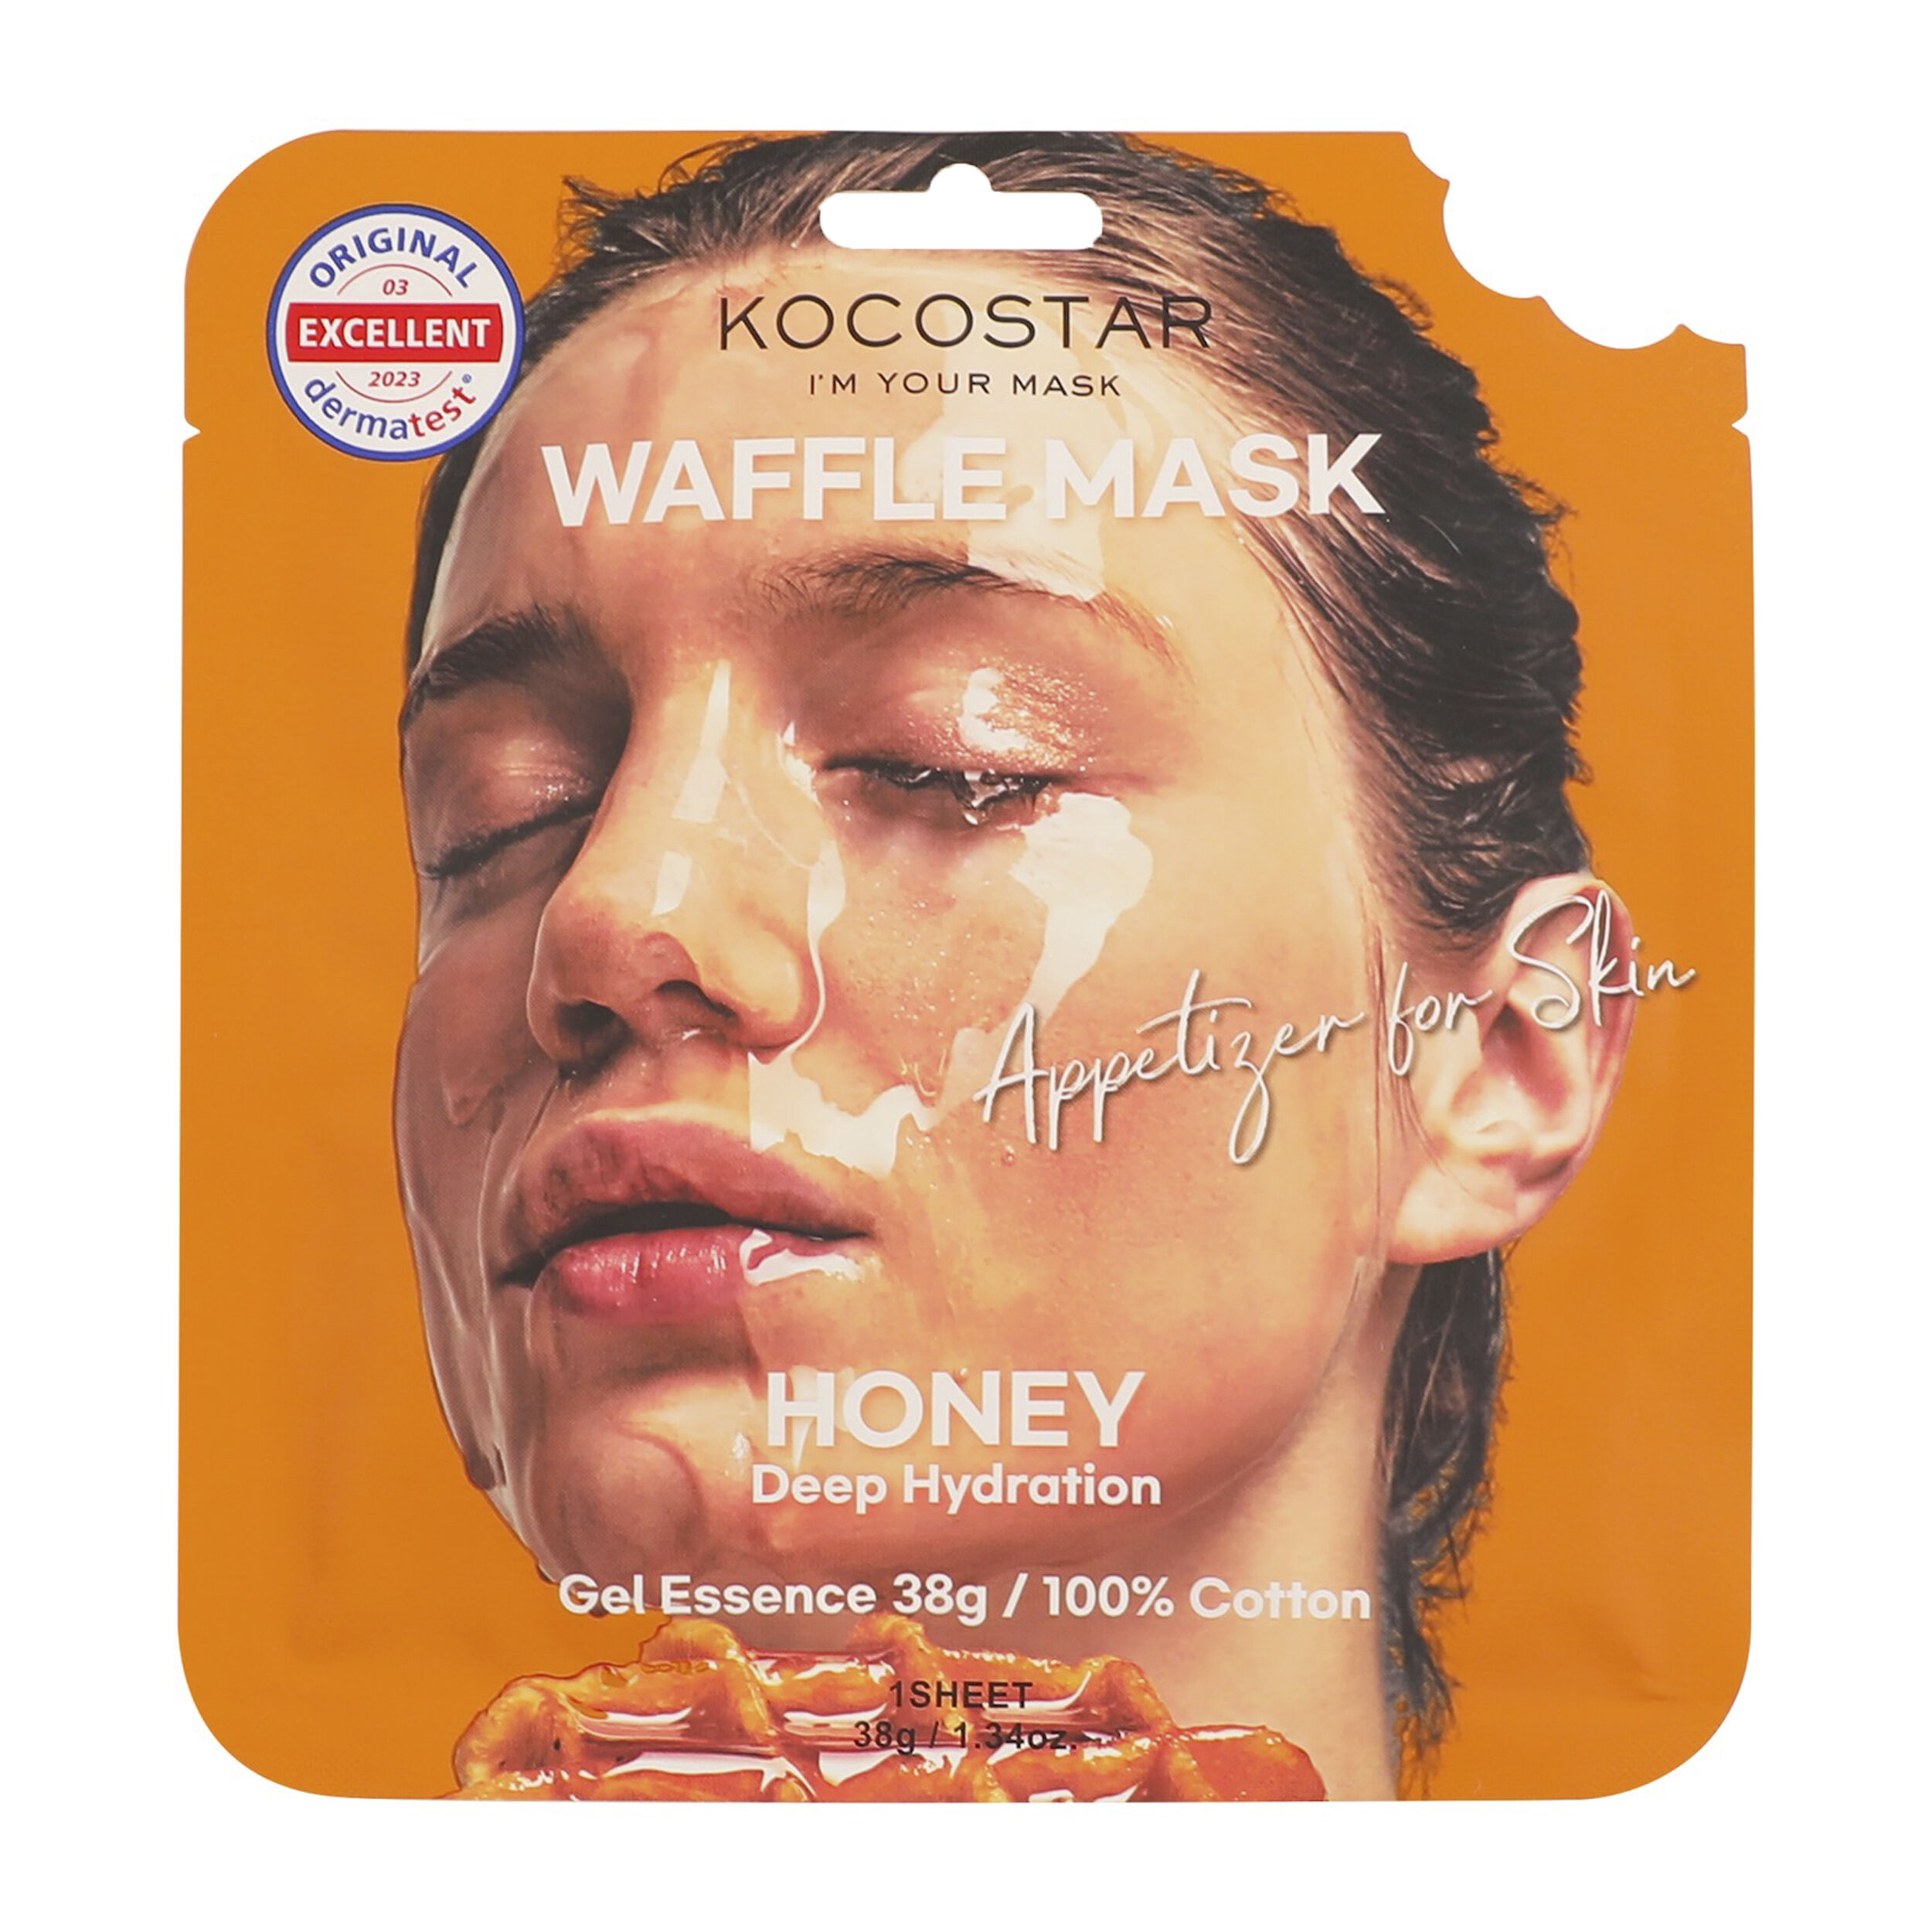 Медовая маска для лица Kocostar Waffle Mask, 38 гр увлажняющая тканевая маска tony moly 21 г